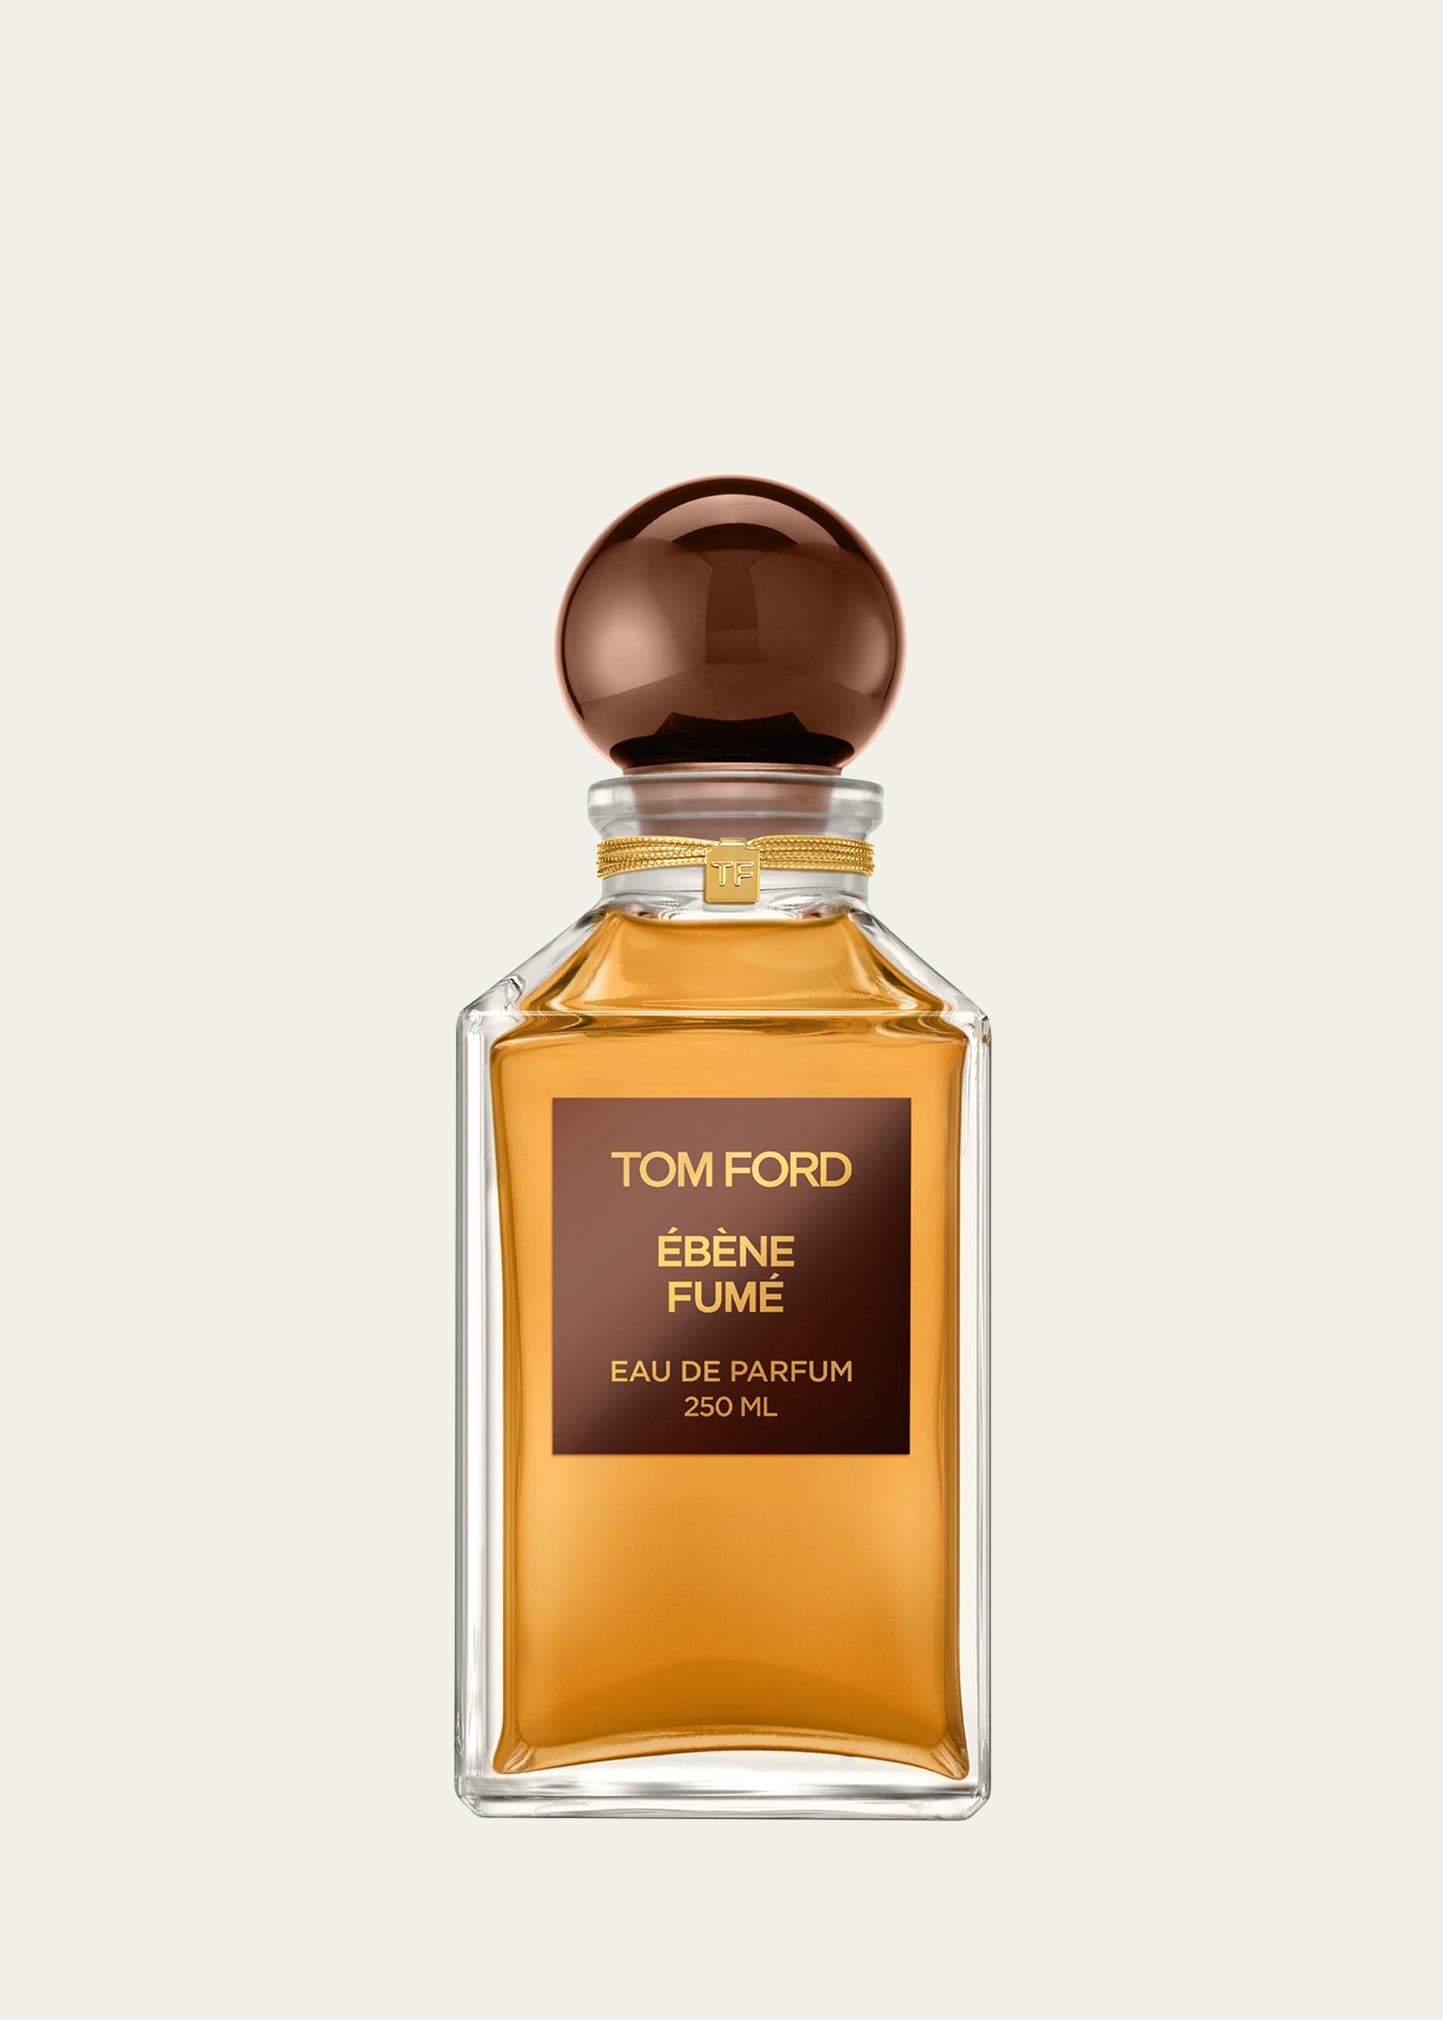 Tom Ford Ébène Fumé Eau De Parfum Fragrance 250ml Decanter